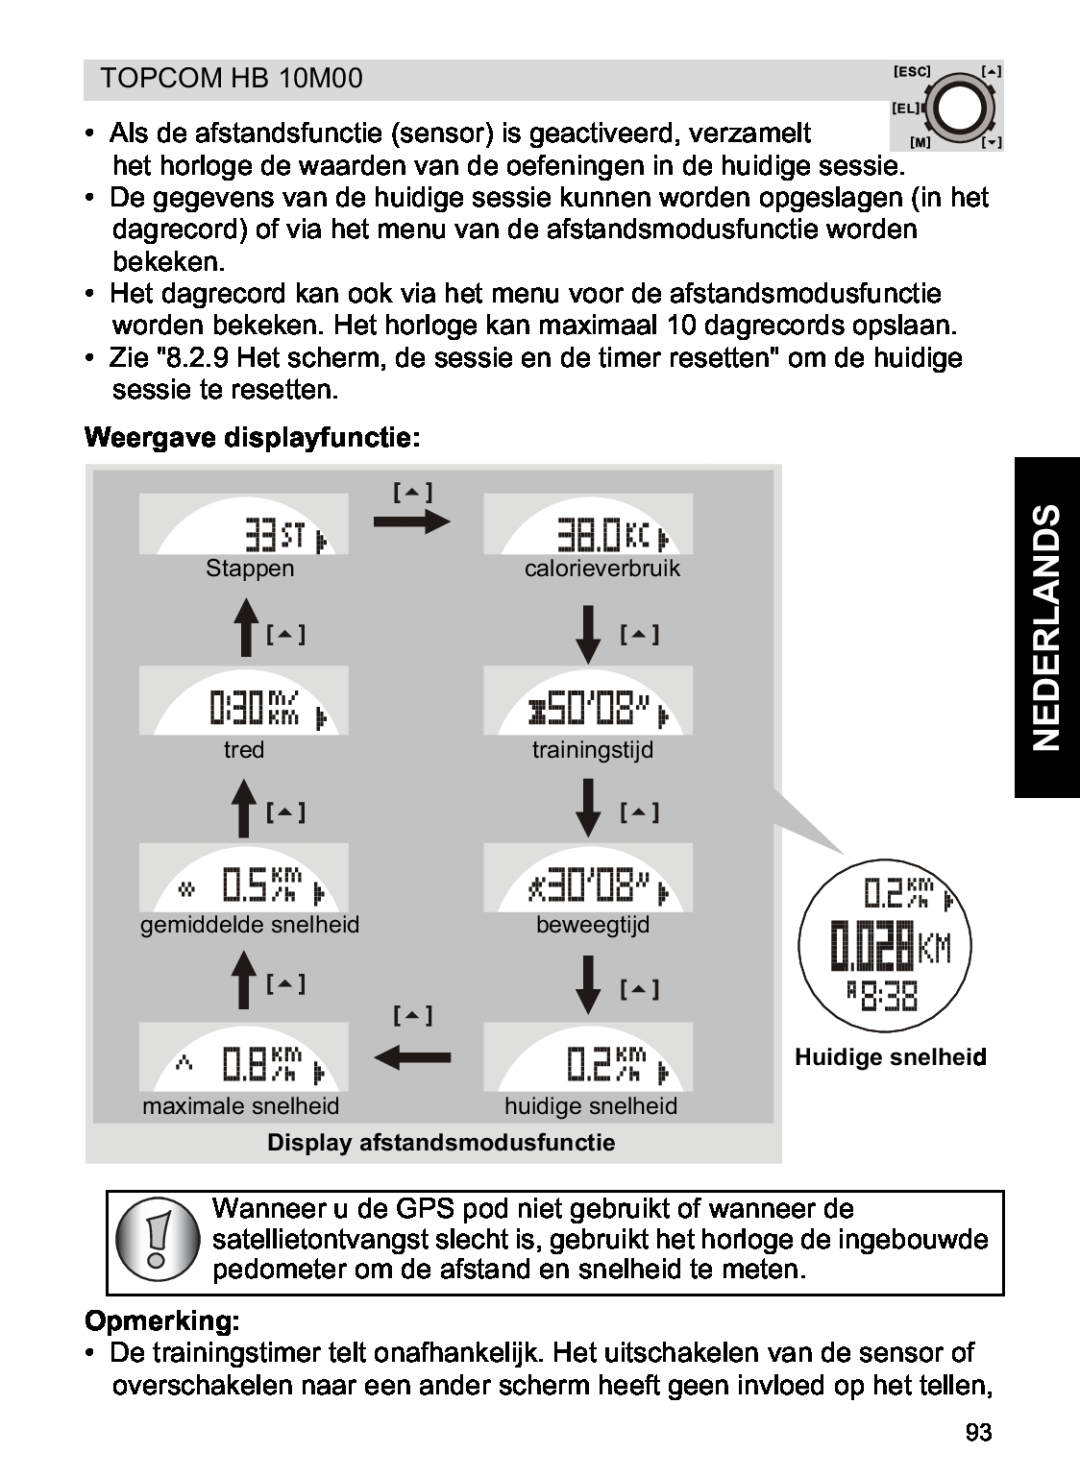 Topcom HB 10M00 manual Weergave displayfunctie, Nederlands, Opmerking, Huidige snelheid, Display afstandsmodusfunctie 